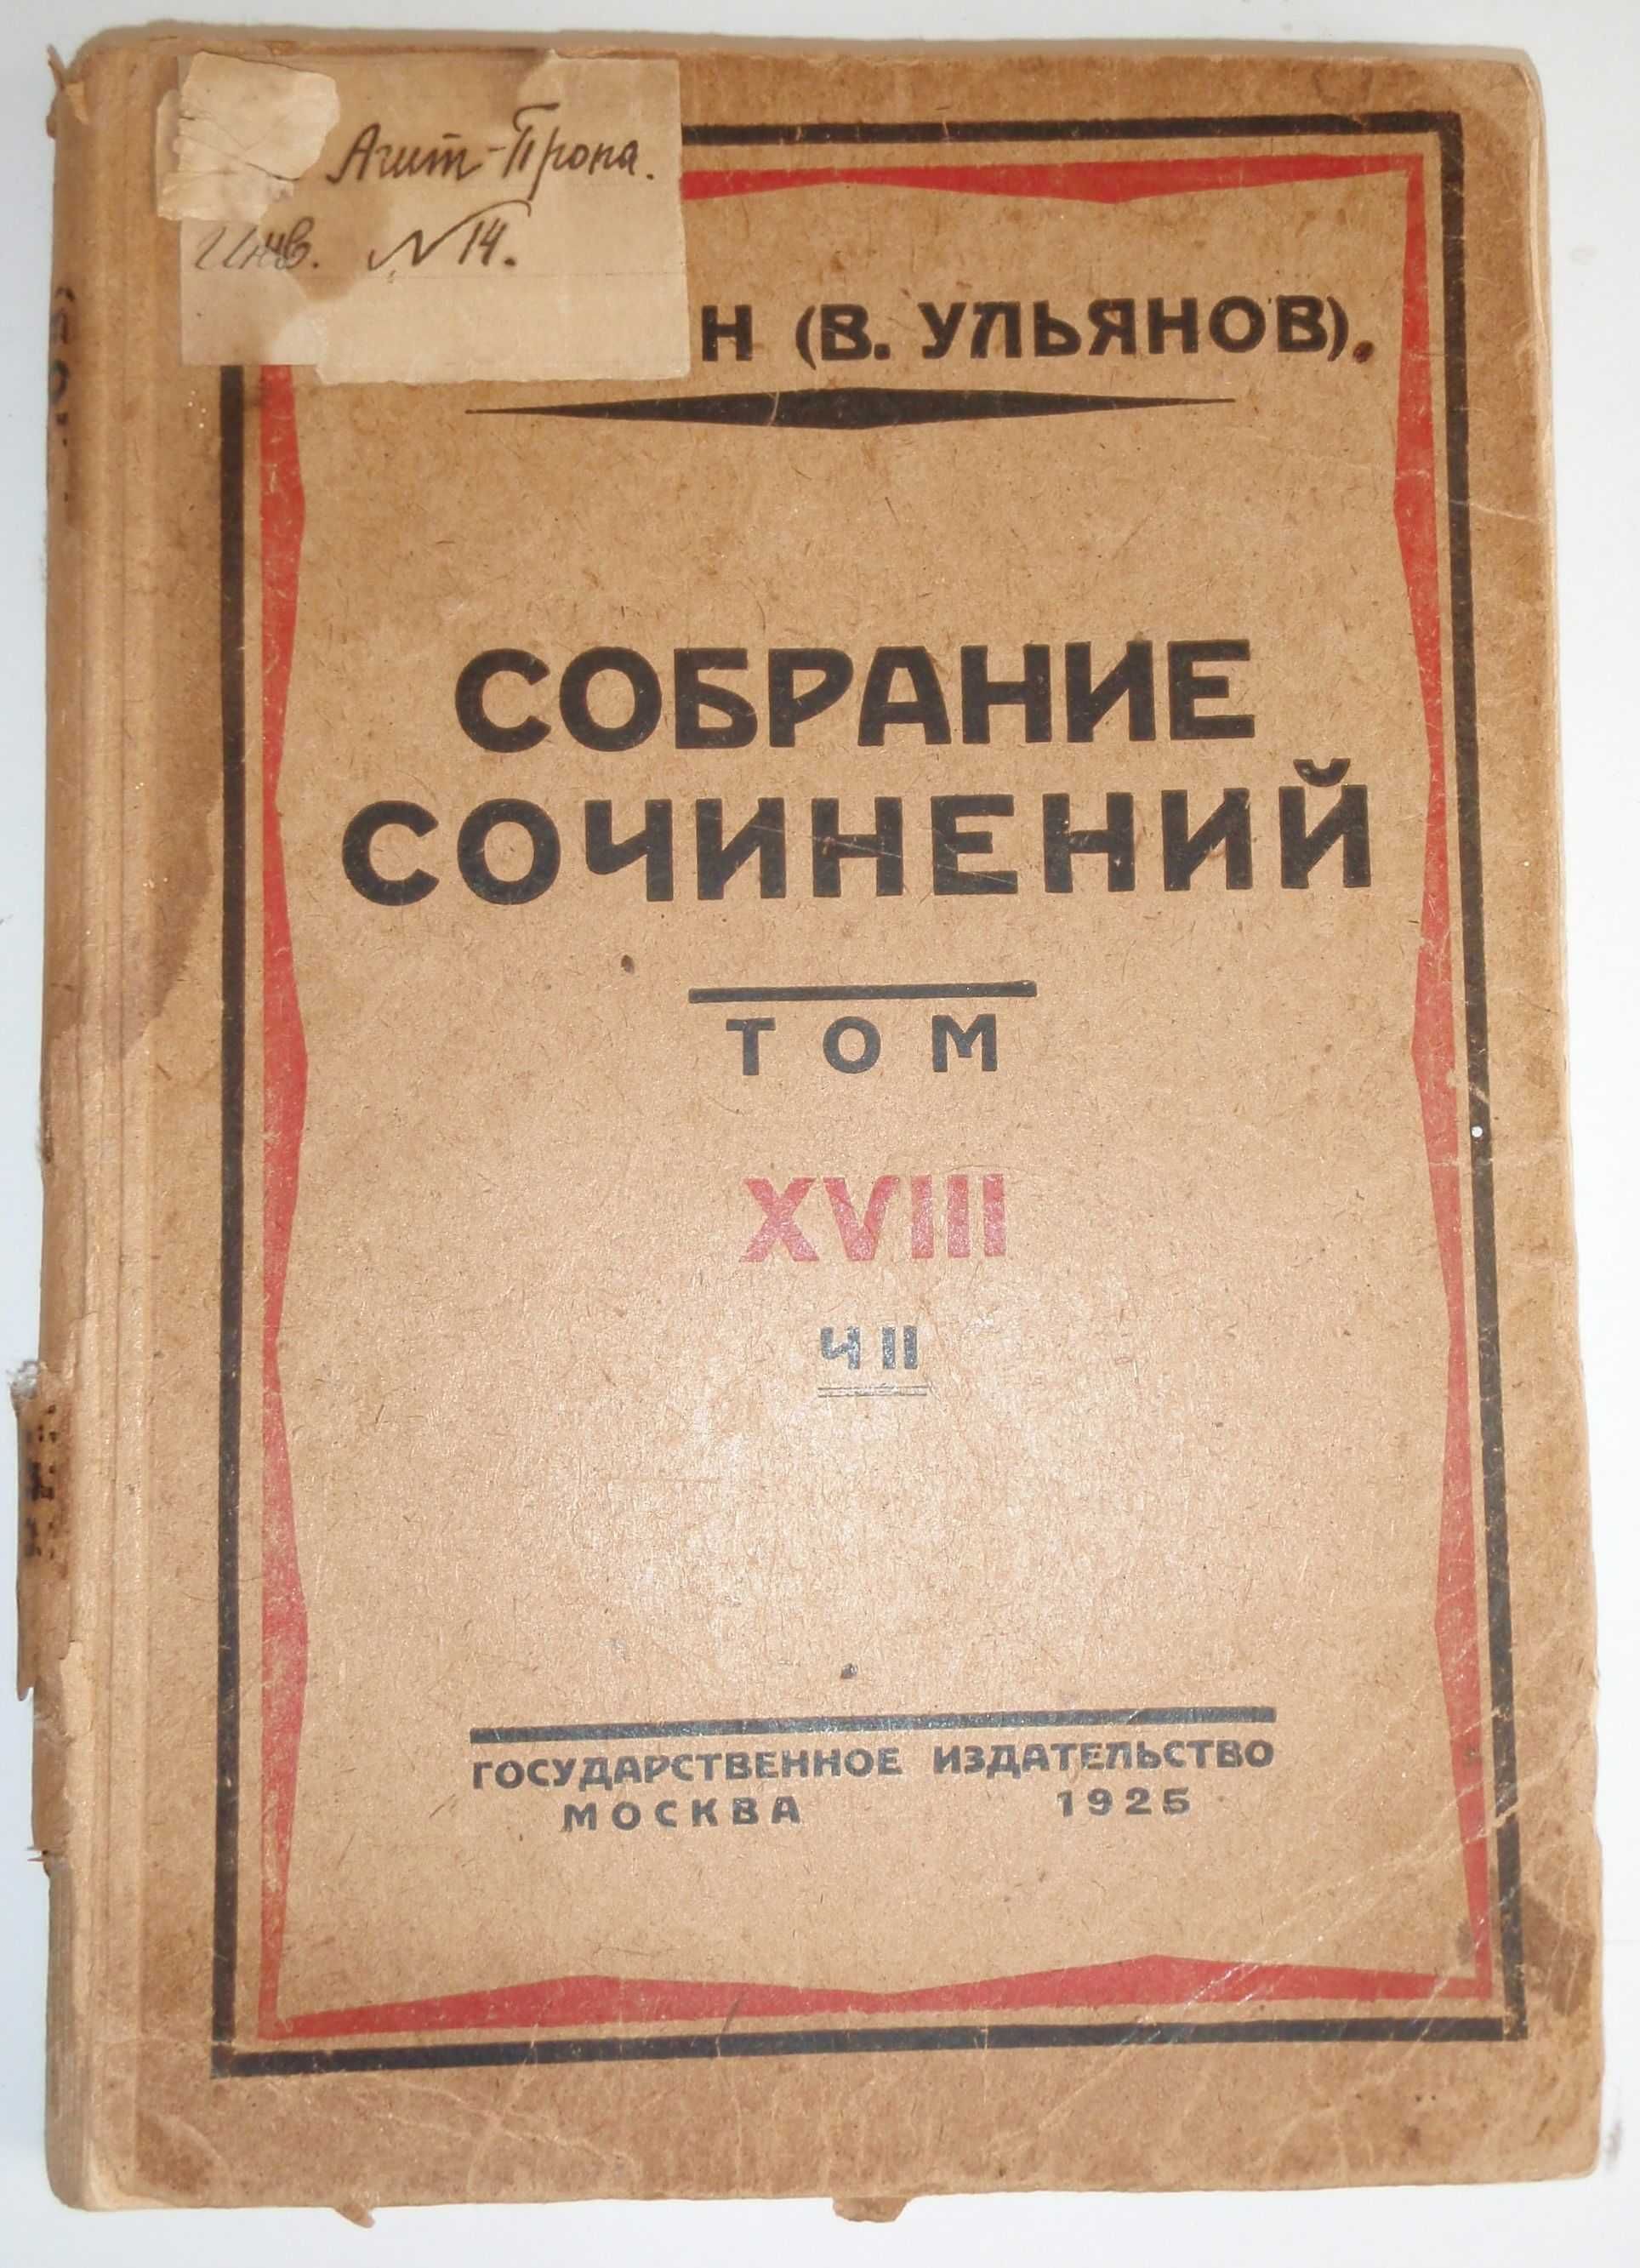 Собрание сочинений Николай Ленин (В. Ульянов) 1925 год 8 том, ч. 2